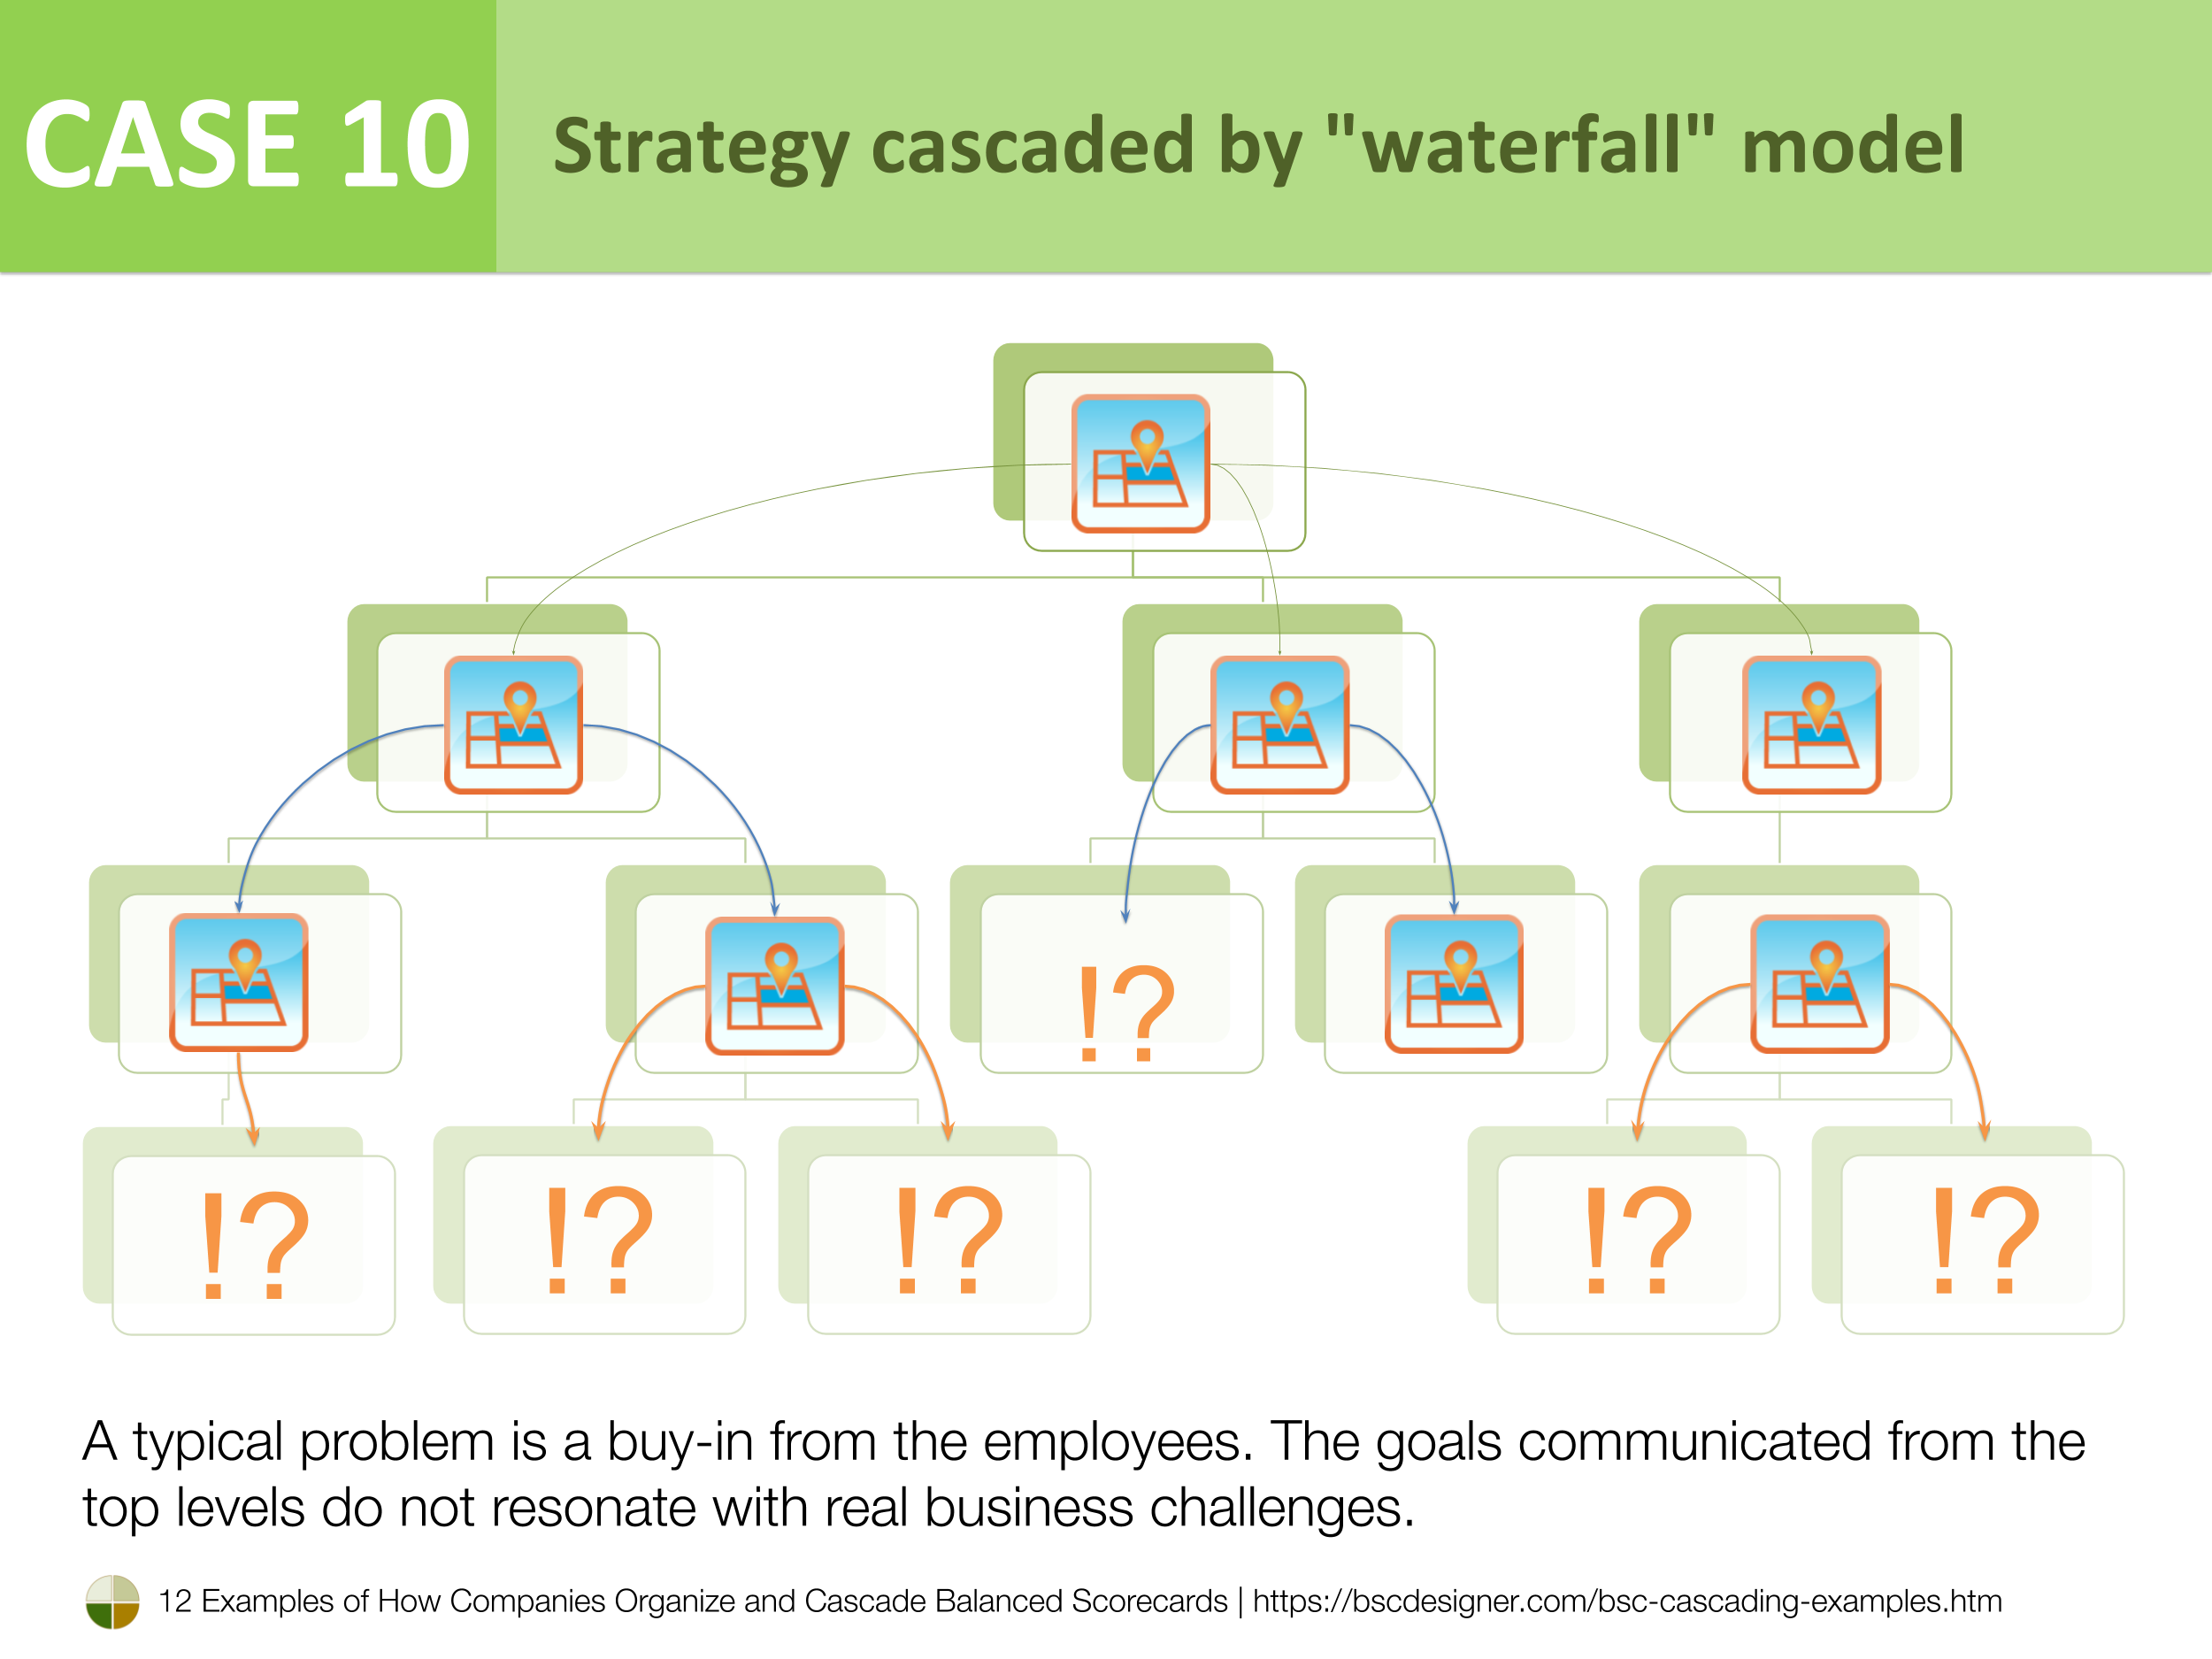 Case 10 - Strategy cascaded by "waterfall" model